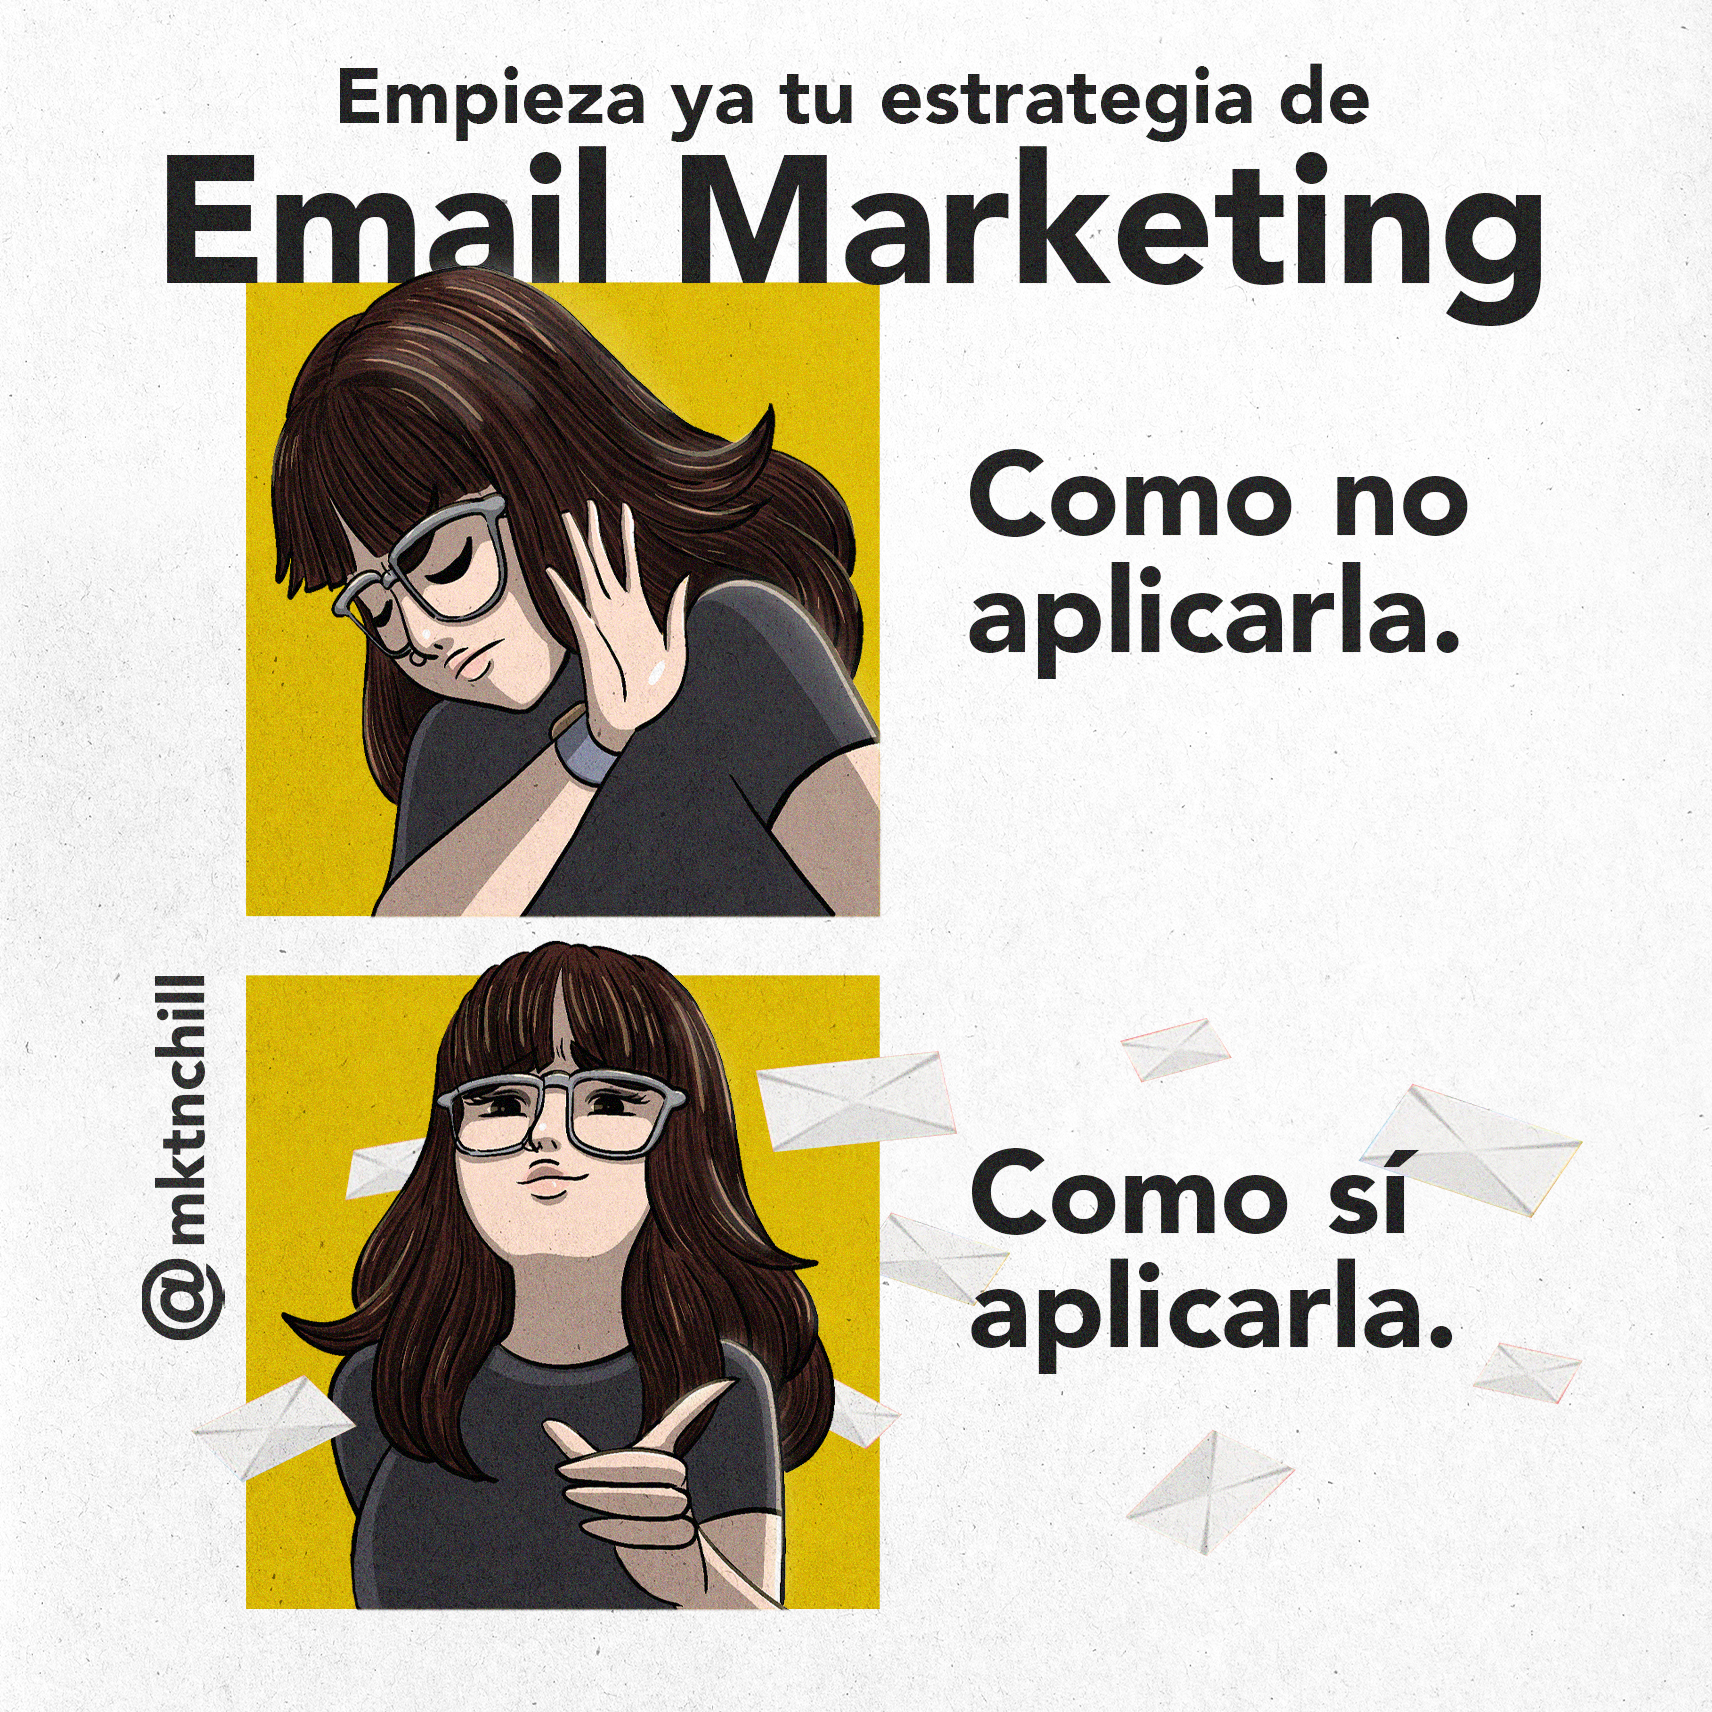 Featured Image for “Empieza ya tu estrategia de Email Marketing: como sí y como no”